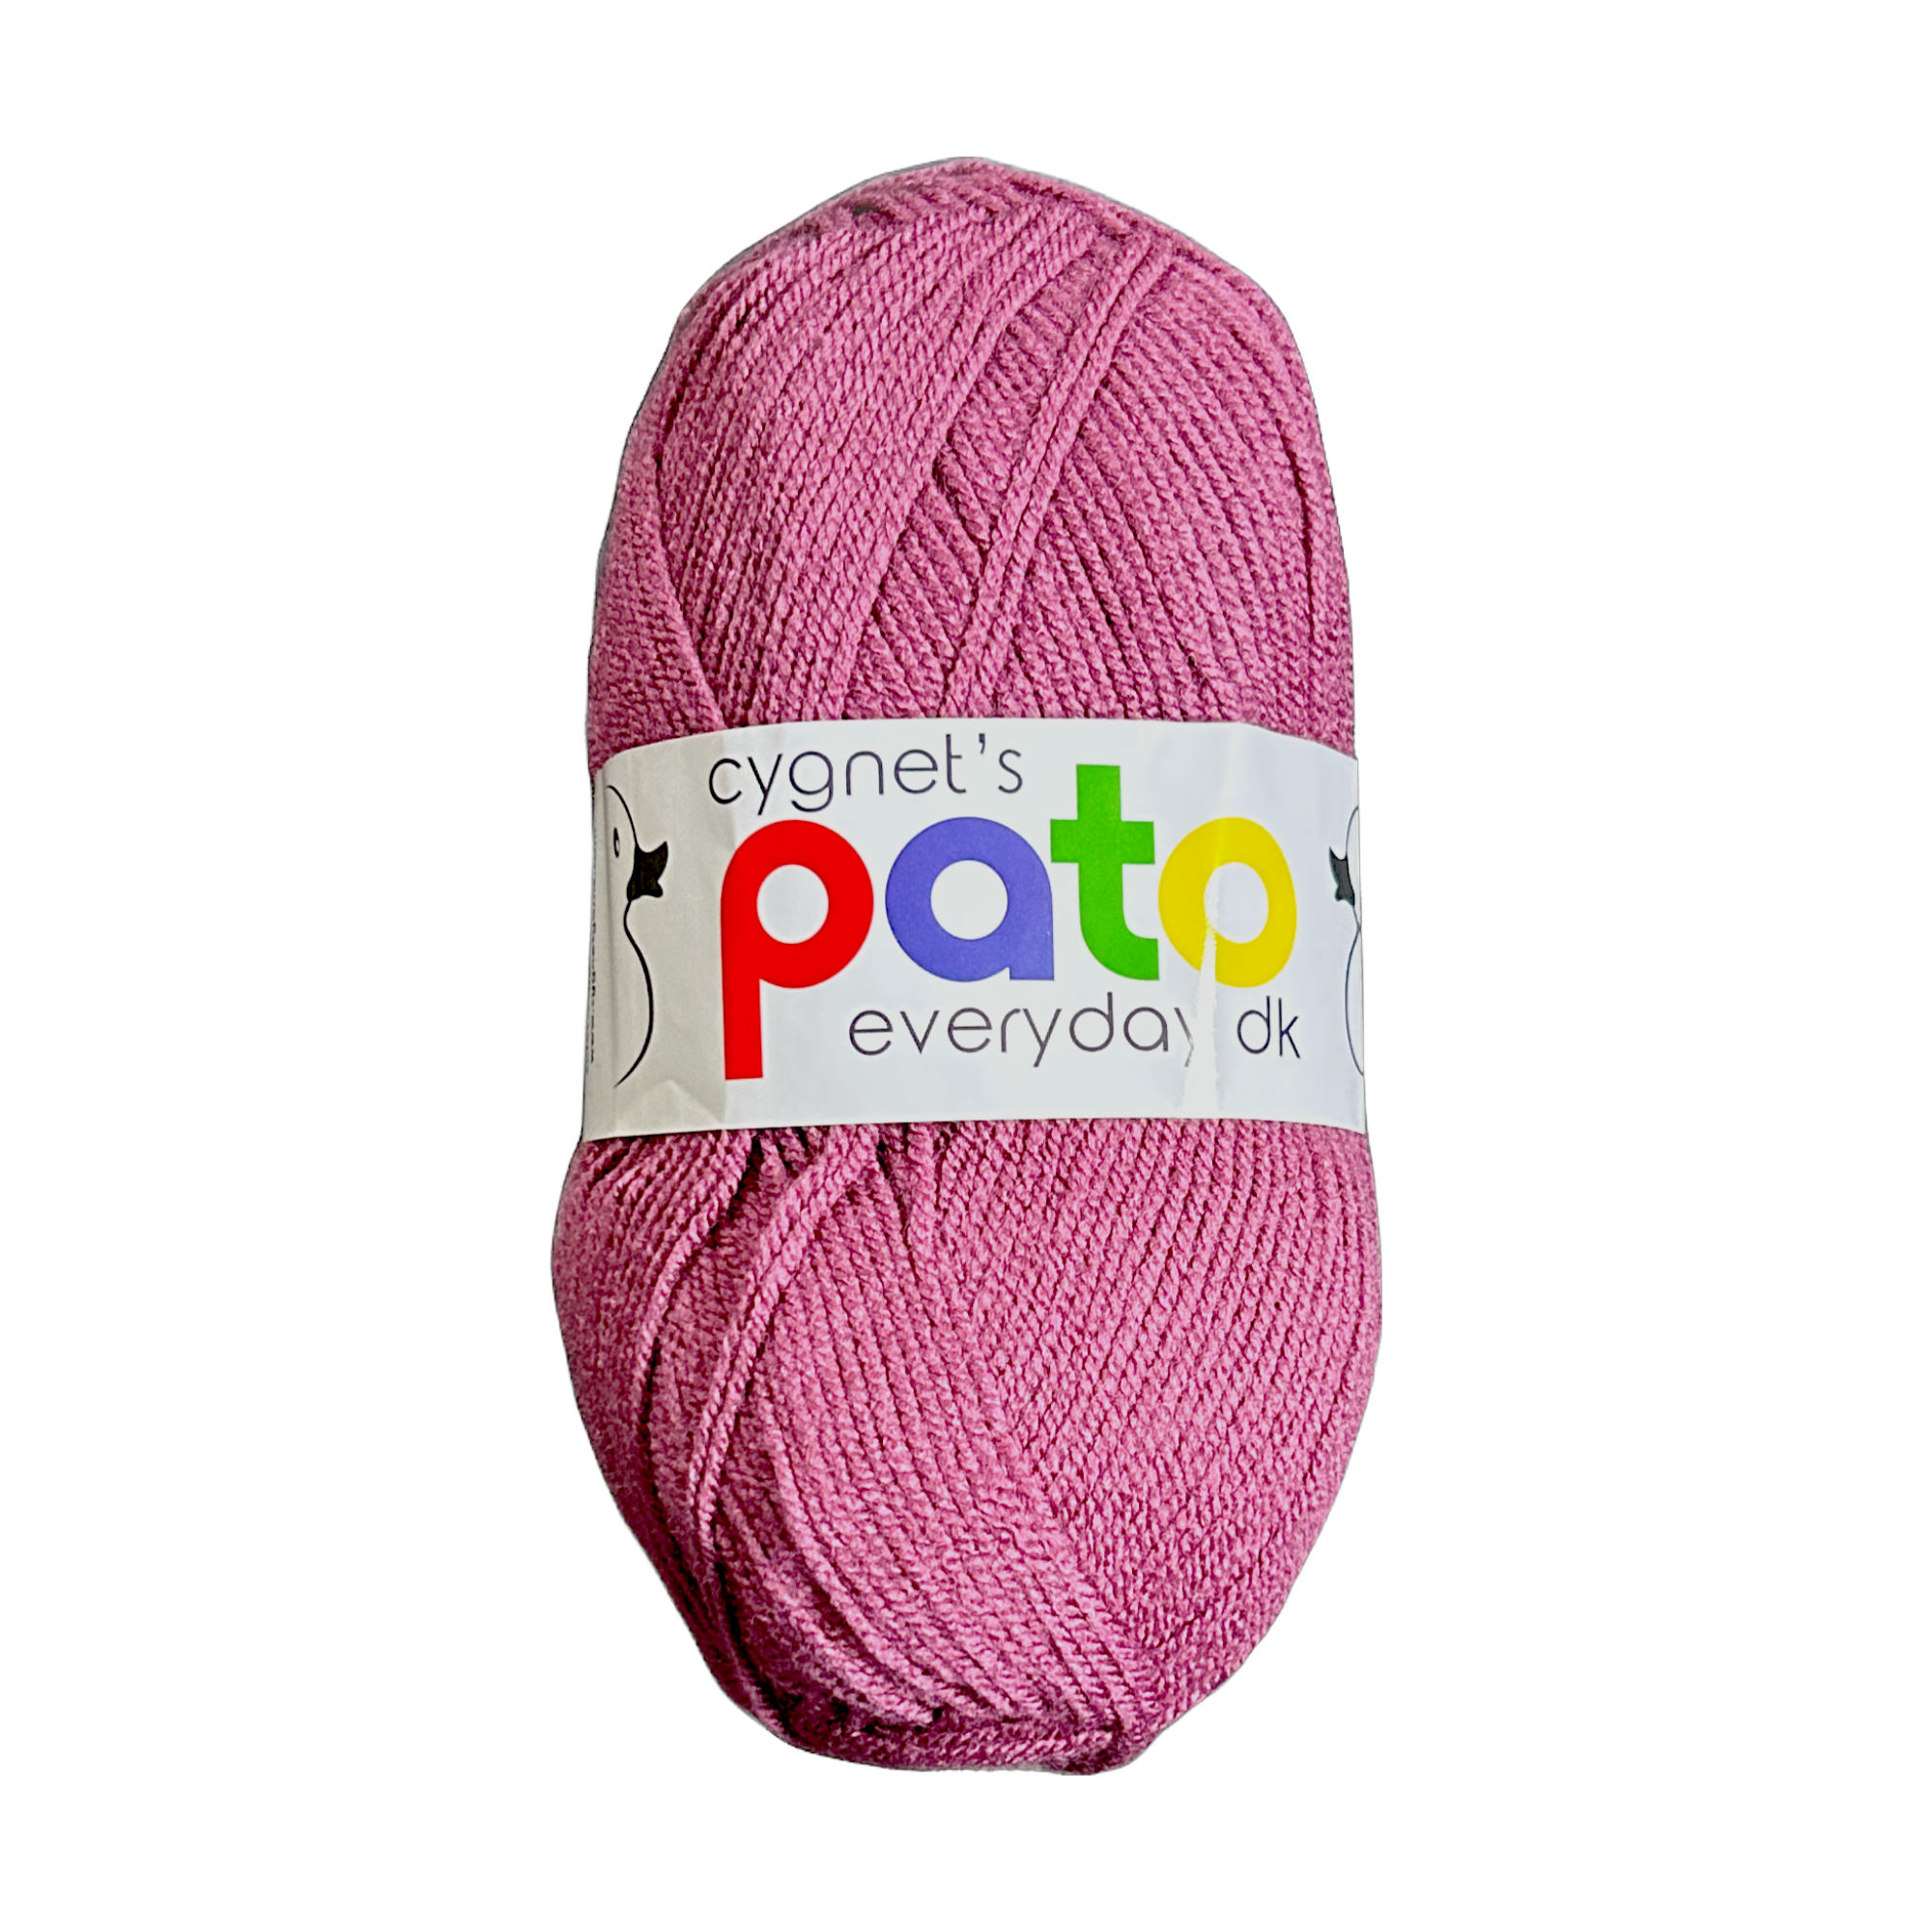 Knitting Machine Pattern Sunset Sweater Addi, Sentro 48 46 40 Pin 